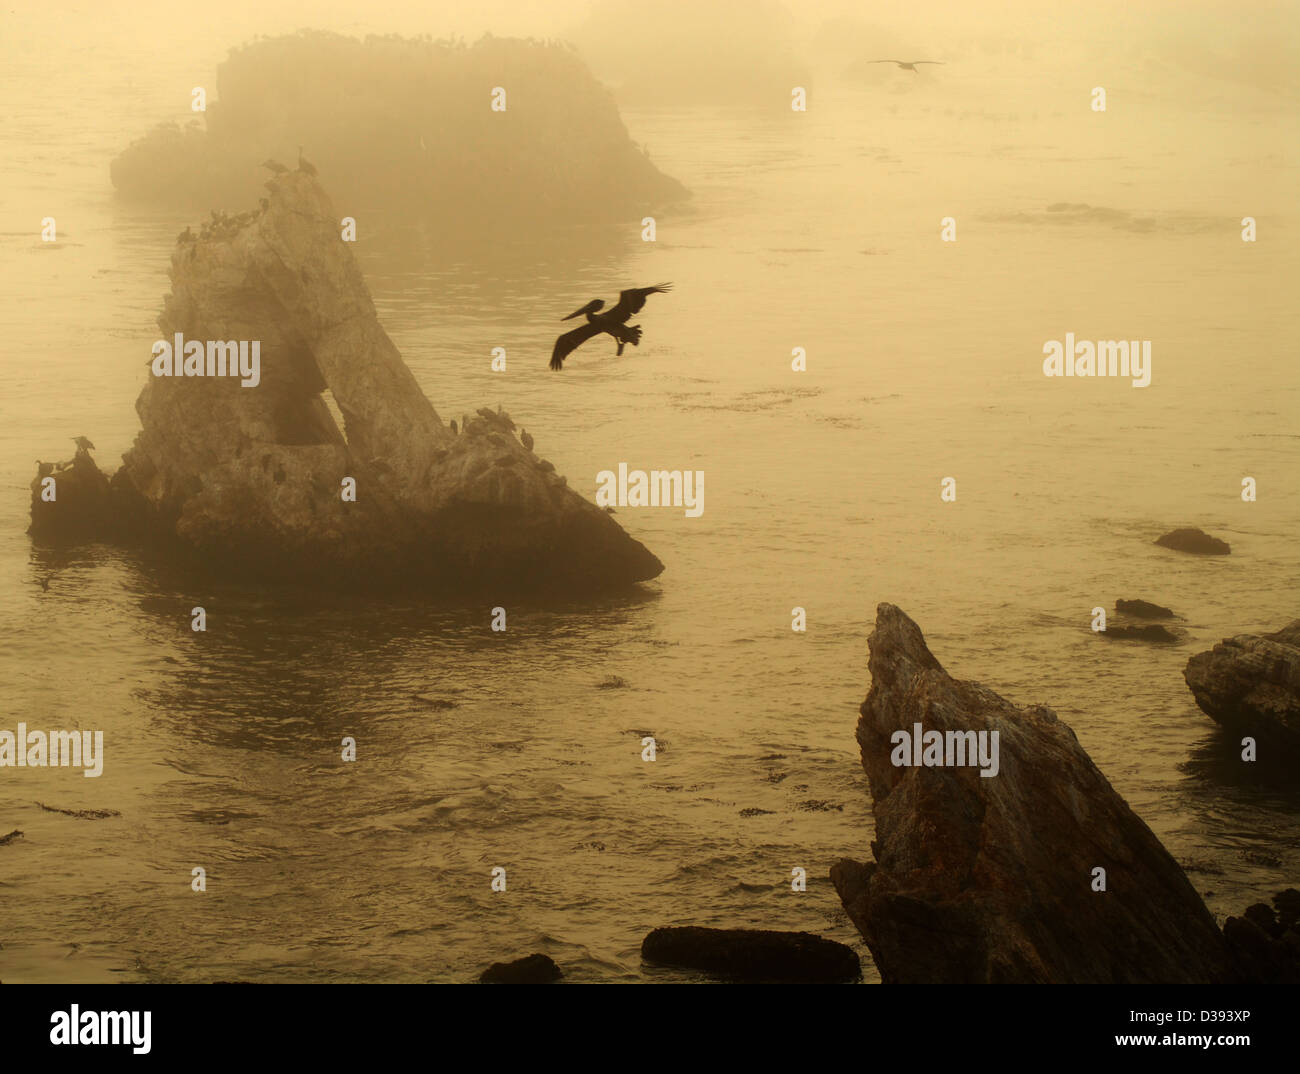 Immagine seppia di un gruppo di isole al largo di Pismo Beach California con pelican in volo dando un epoca preistorica sentire Foto Stock